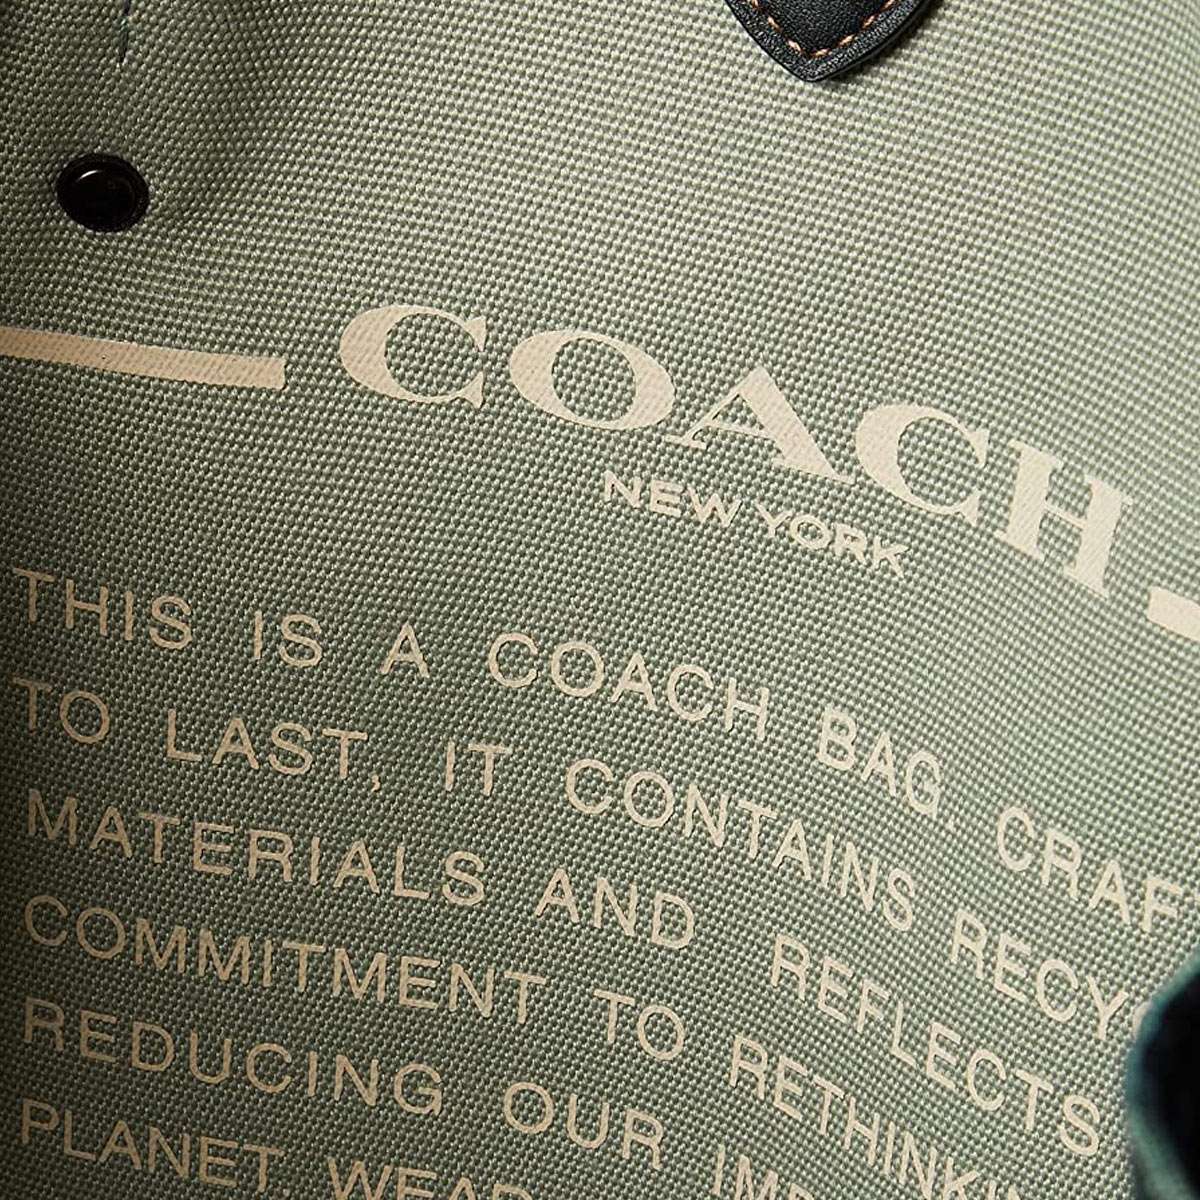 コーチ メンズ バッグ トート ショルダーバッグ 多機能 革 人気ブランド アウトレット Coach お得な特別割引価格